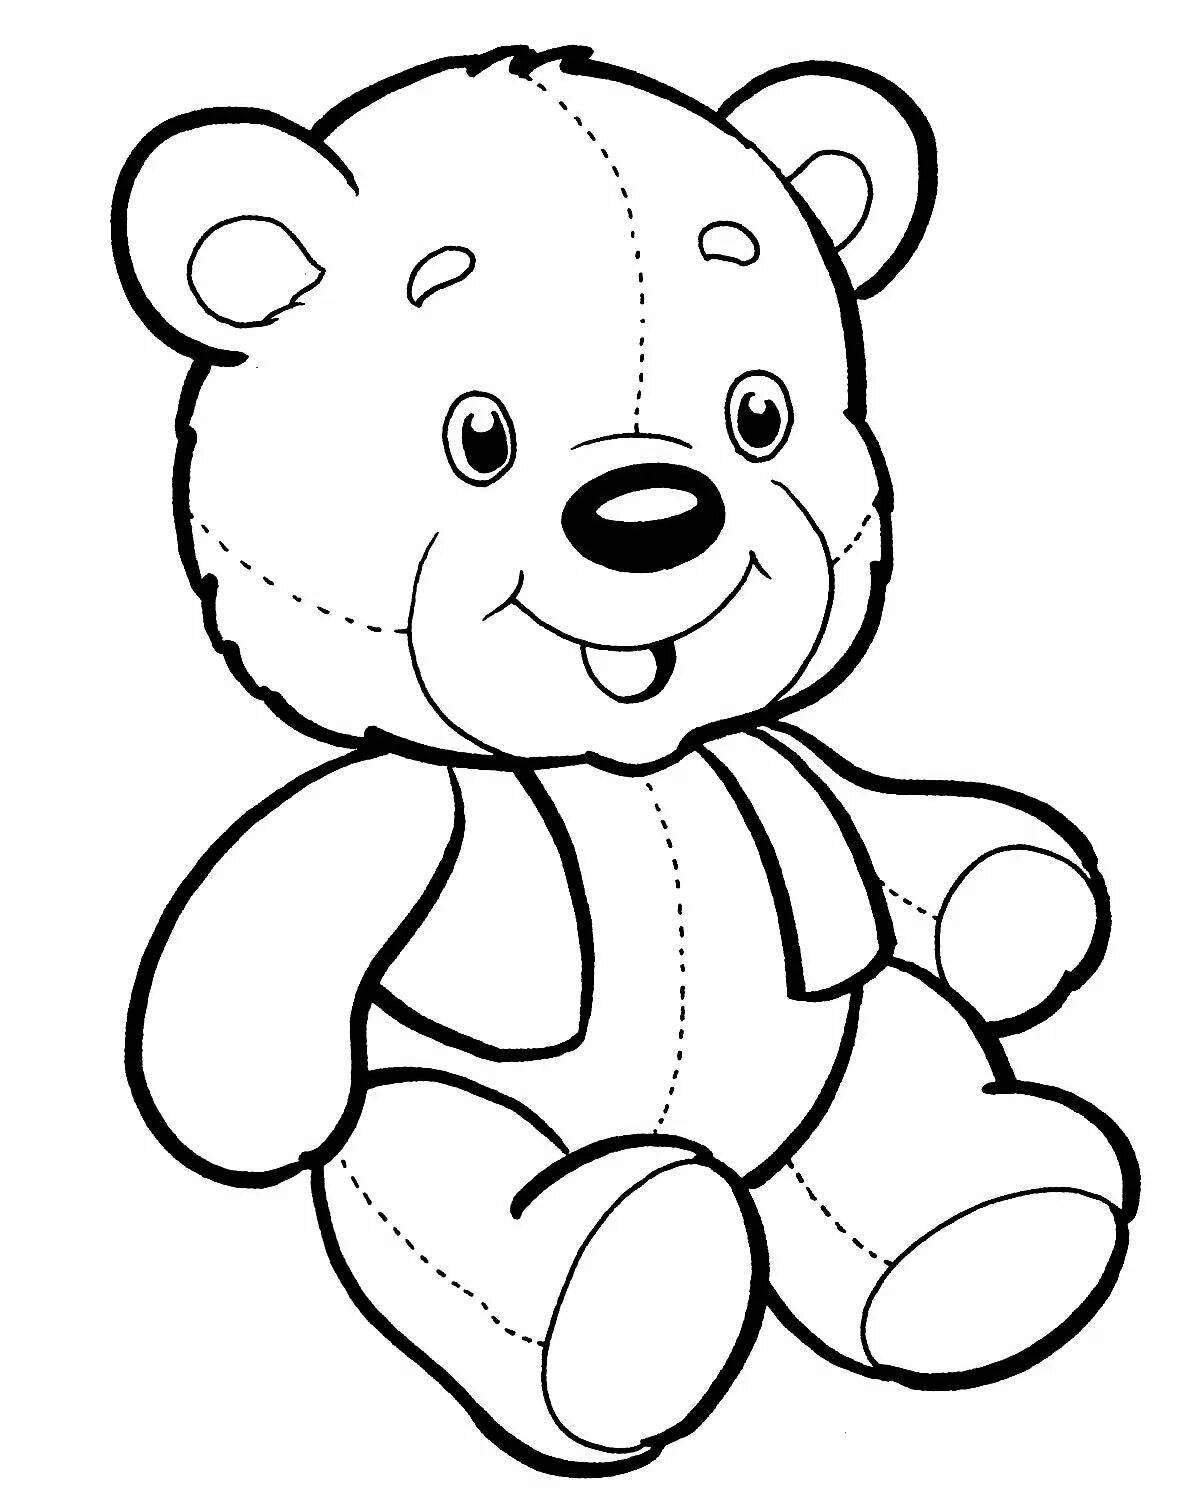 Colouring a fluffy teddy bear